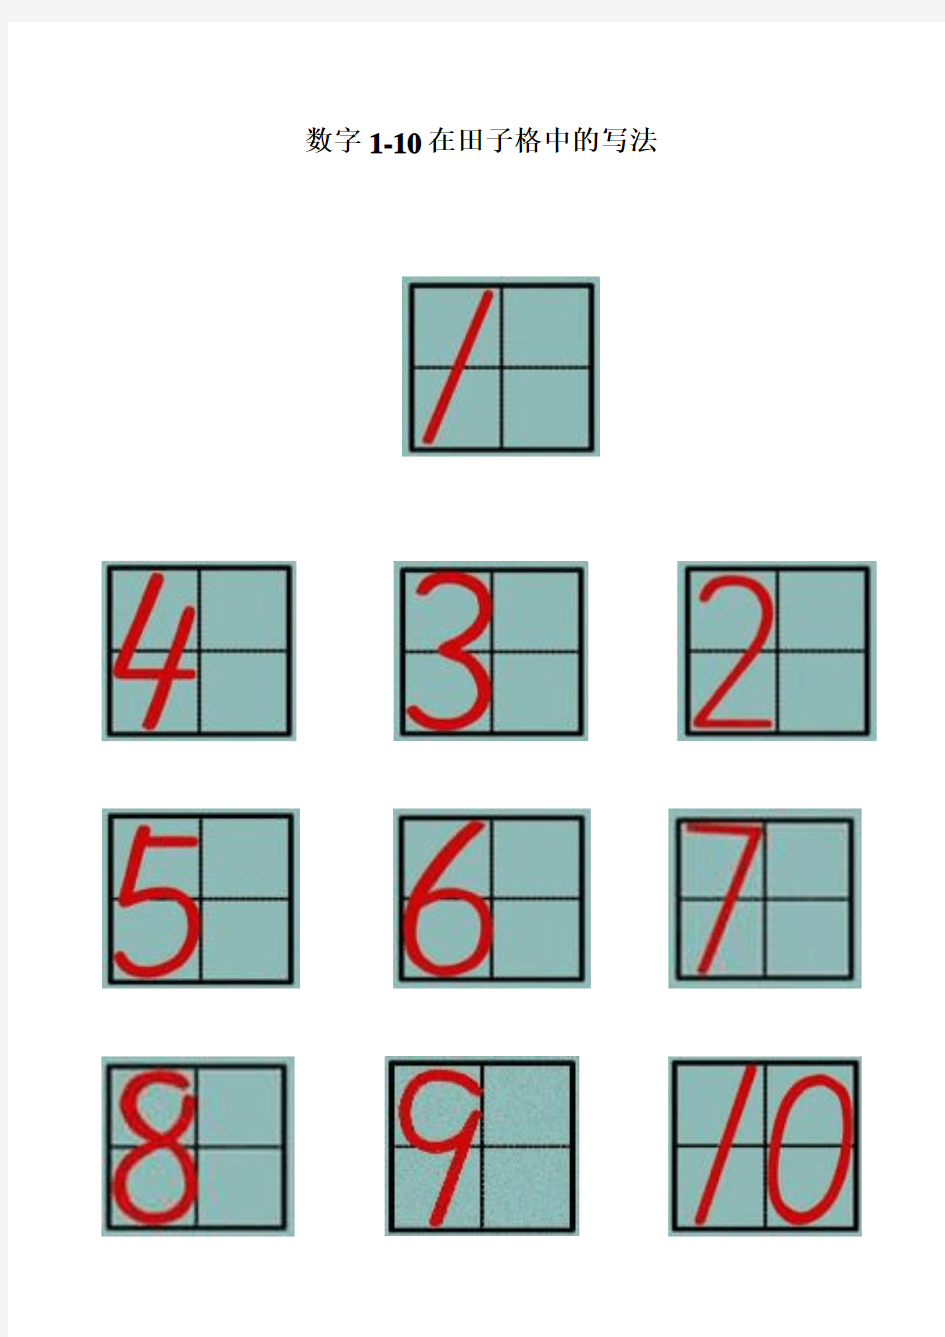 数字1至10在田字格中的位置